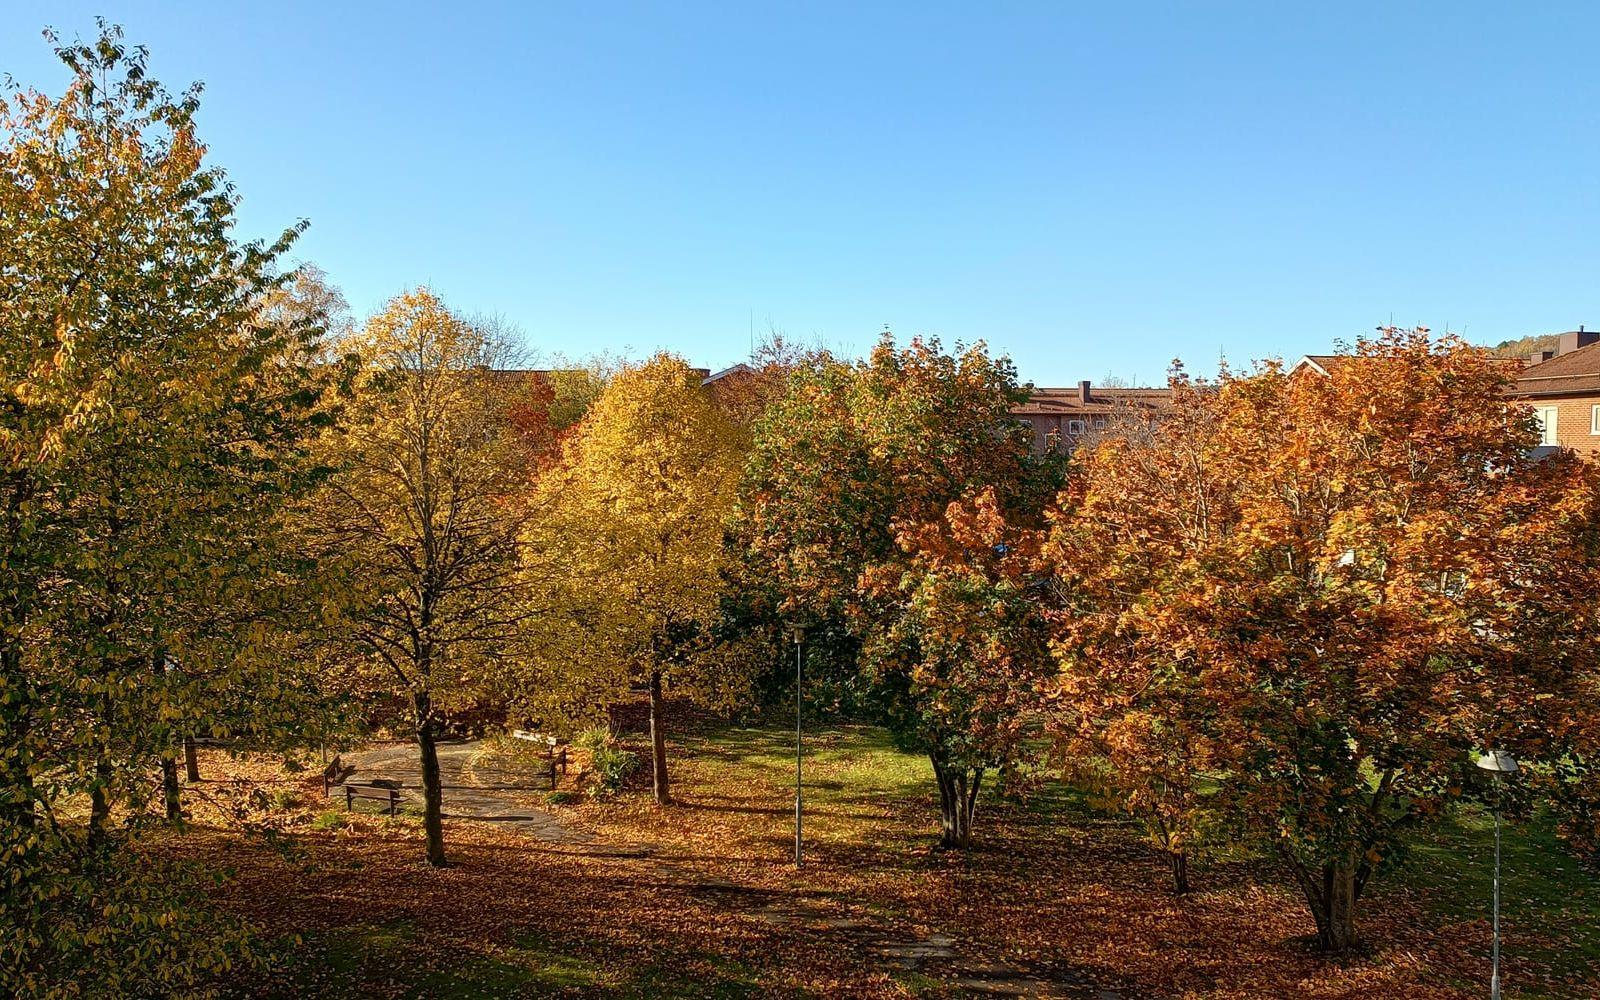 Här är en bild som jag själv har tagit från min balkong. I bilden syns Torallaparkens träd när de bjuder på ett riktigt färgspektakel en solig förmiddag, den 19 oktober i år. 